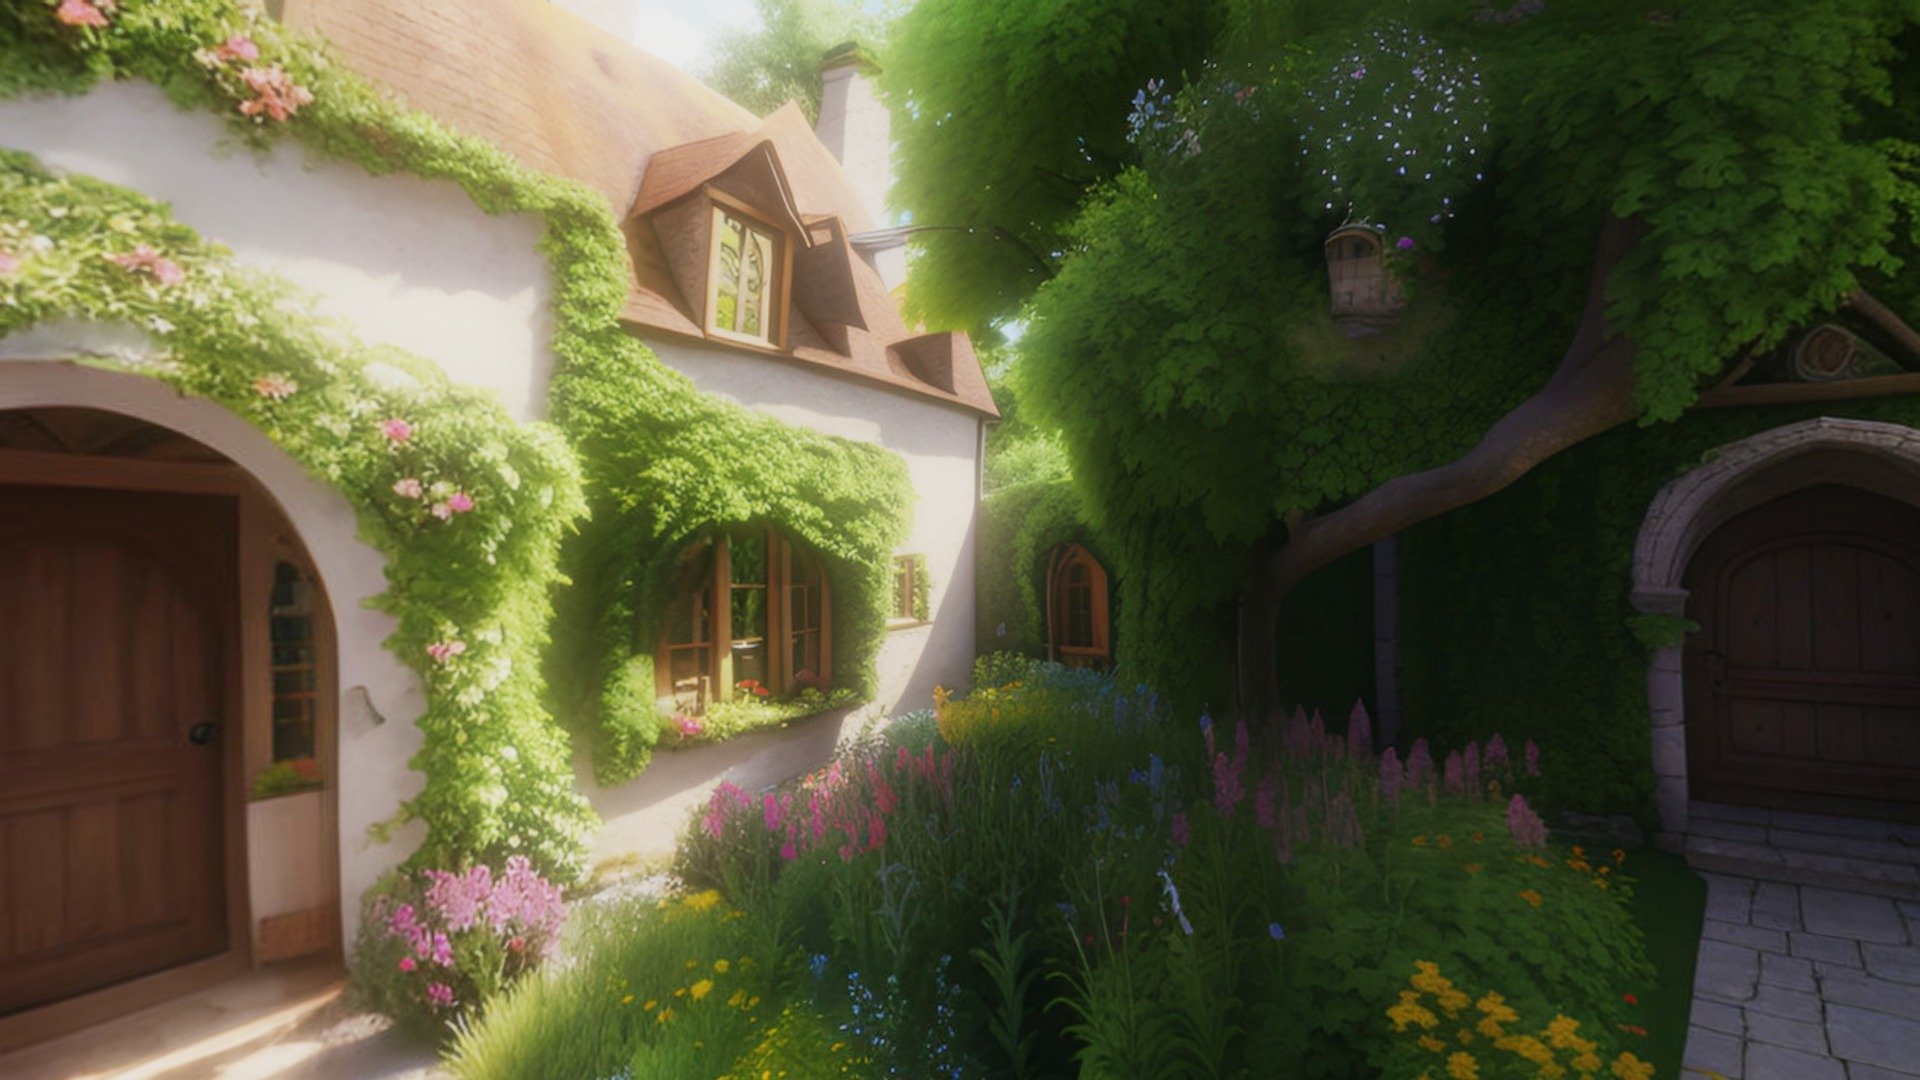 Fairytale_Garden Test - Fairytale_Garden - Download Free 3D model by Giimann 3d model